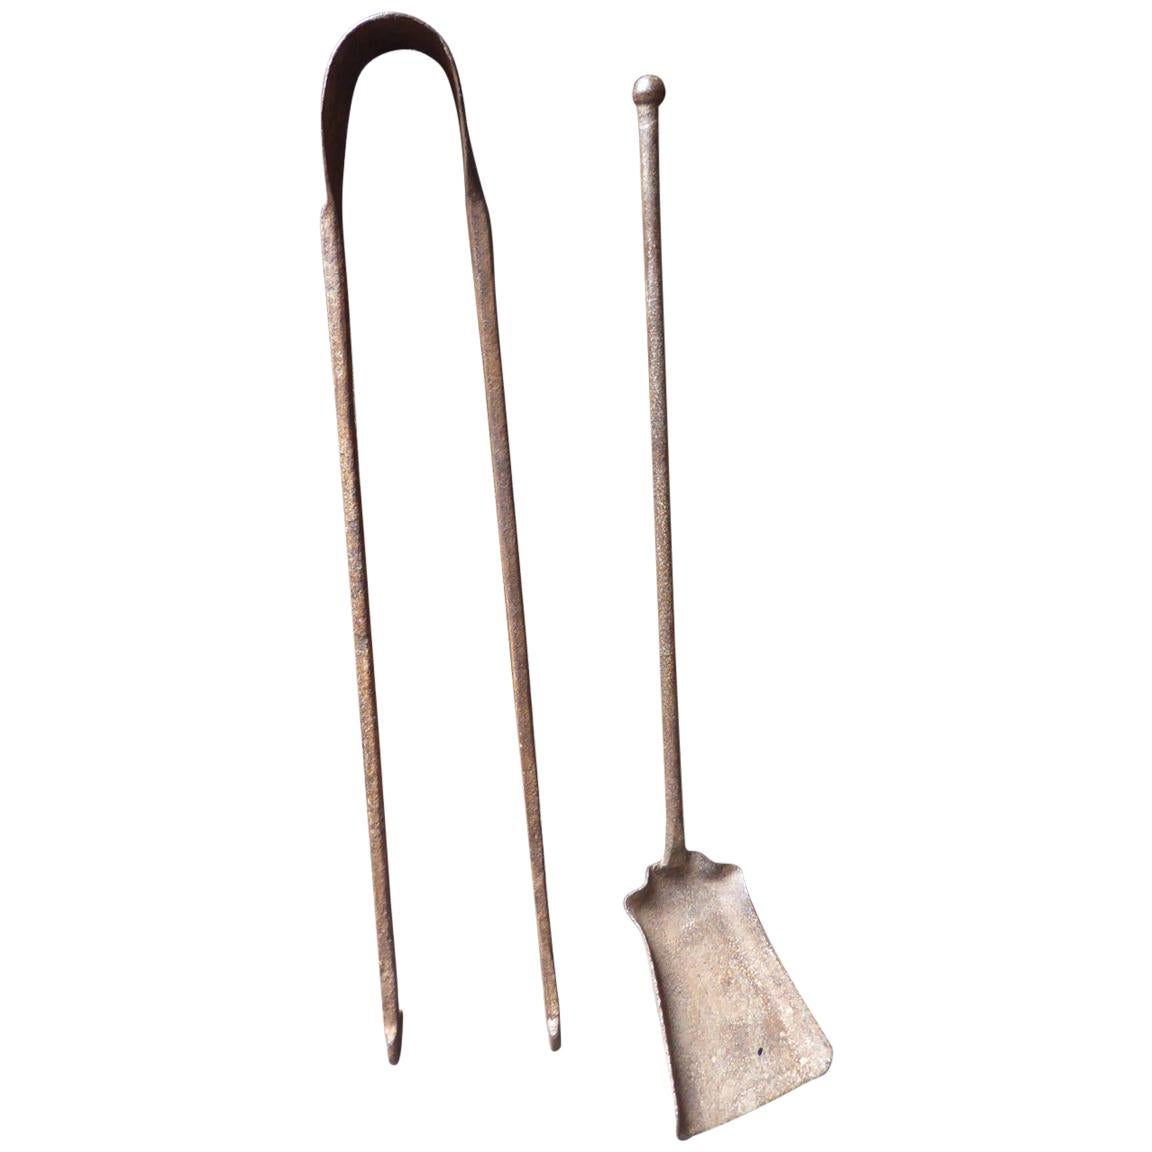 Outils ou outils de cheminée français anciens en fer forgé, 17e-18e siècle